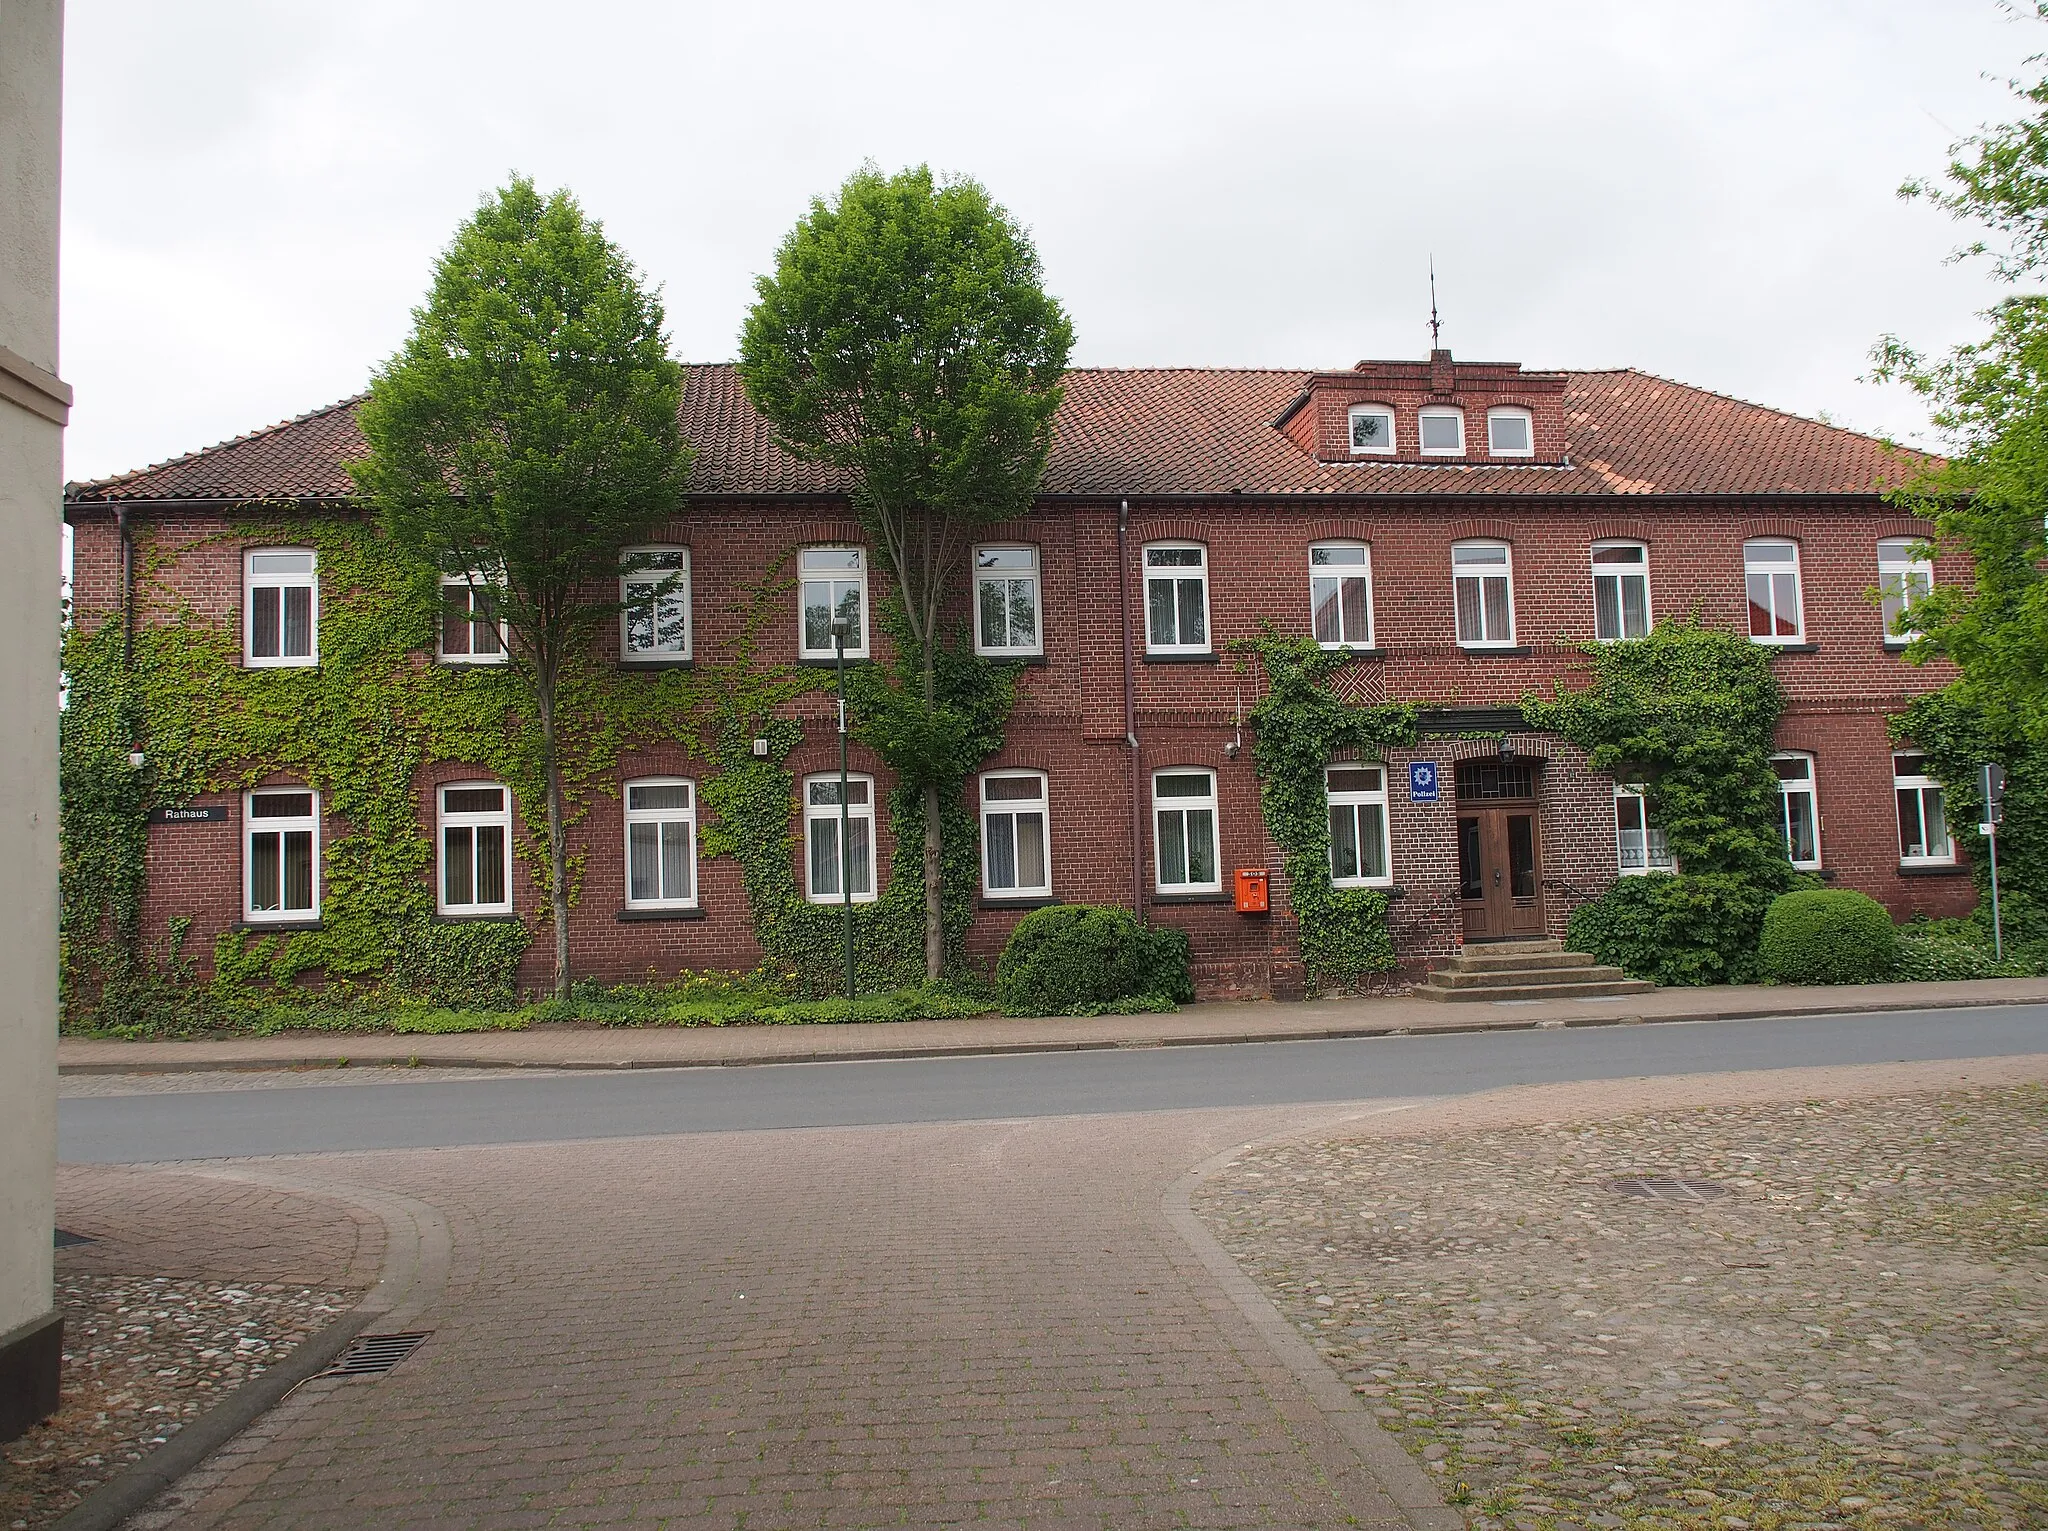 Bild von Lüneburg